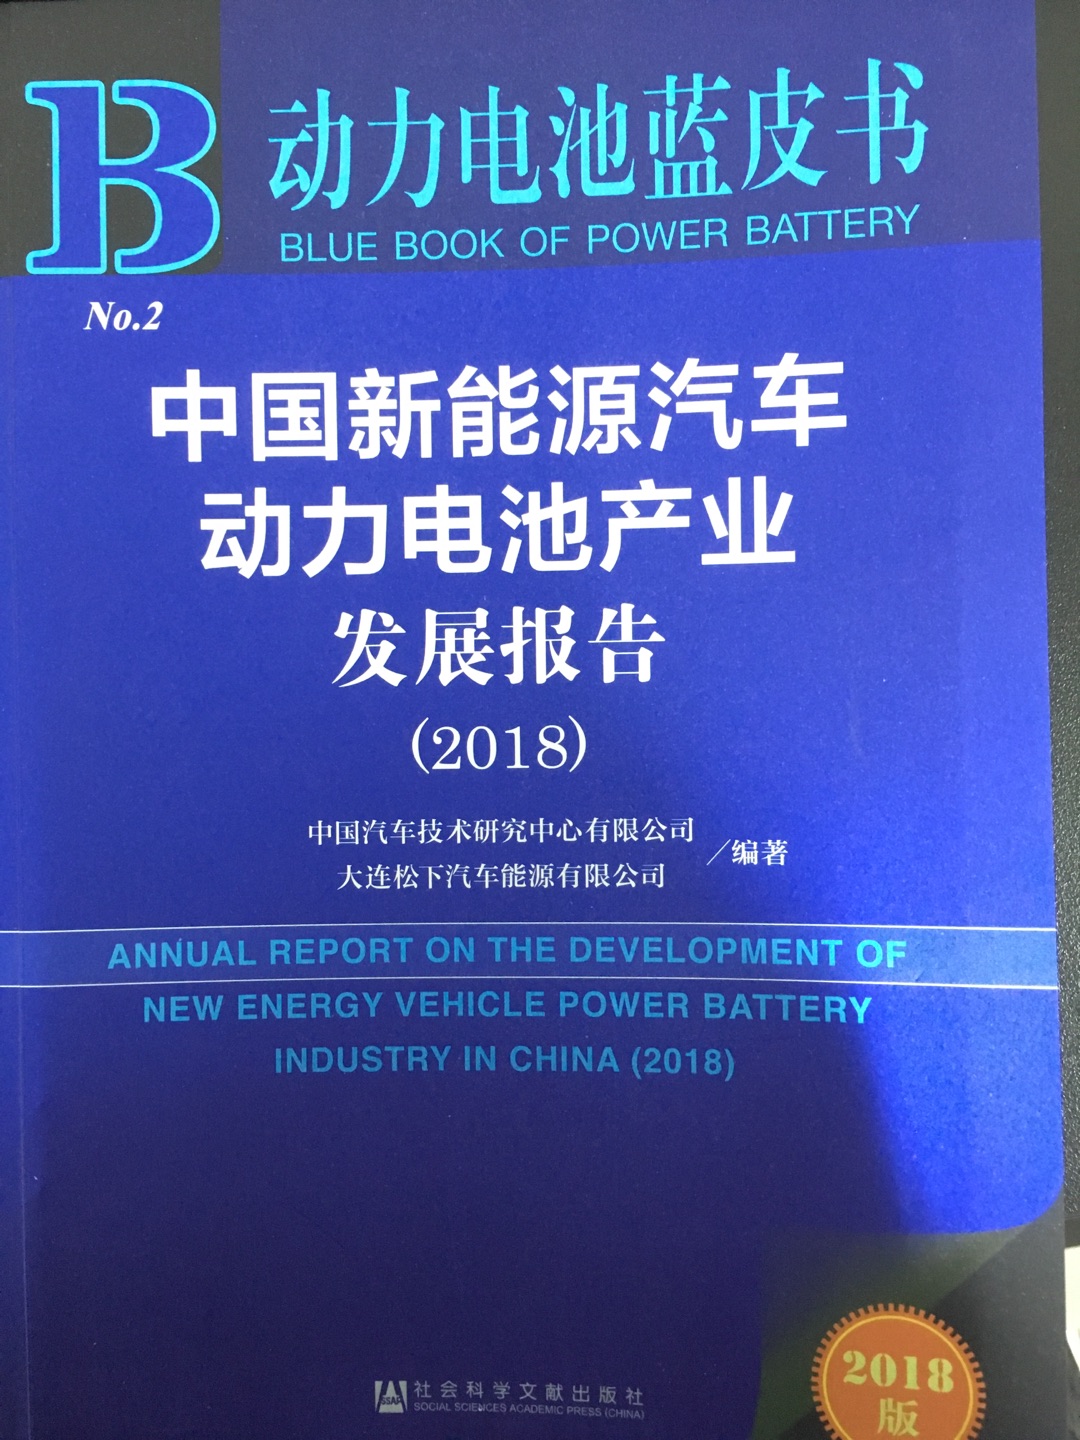 动力电池技术是新能源汽车的最核心技术，节能与环保并重之术！